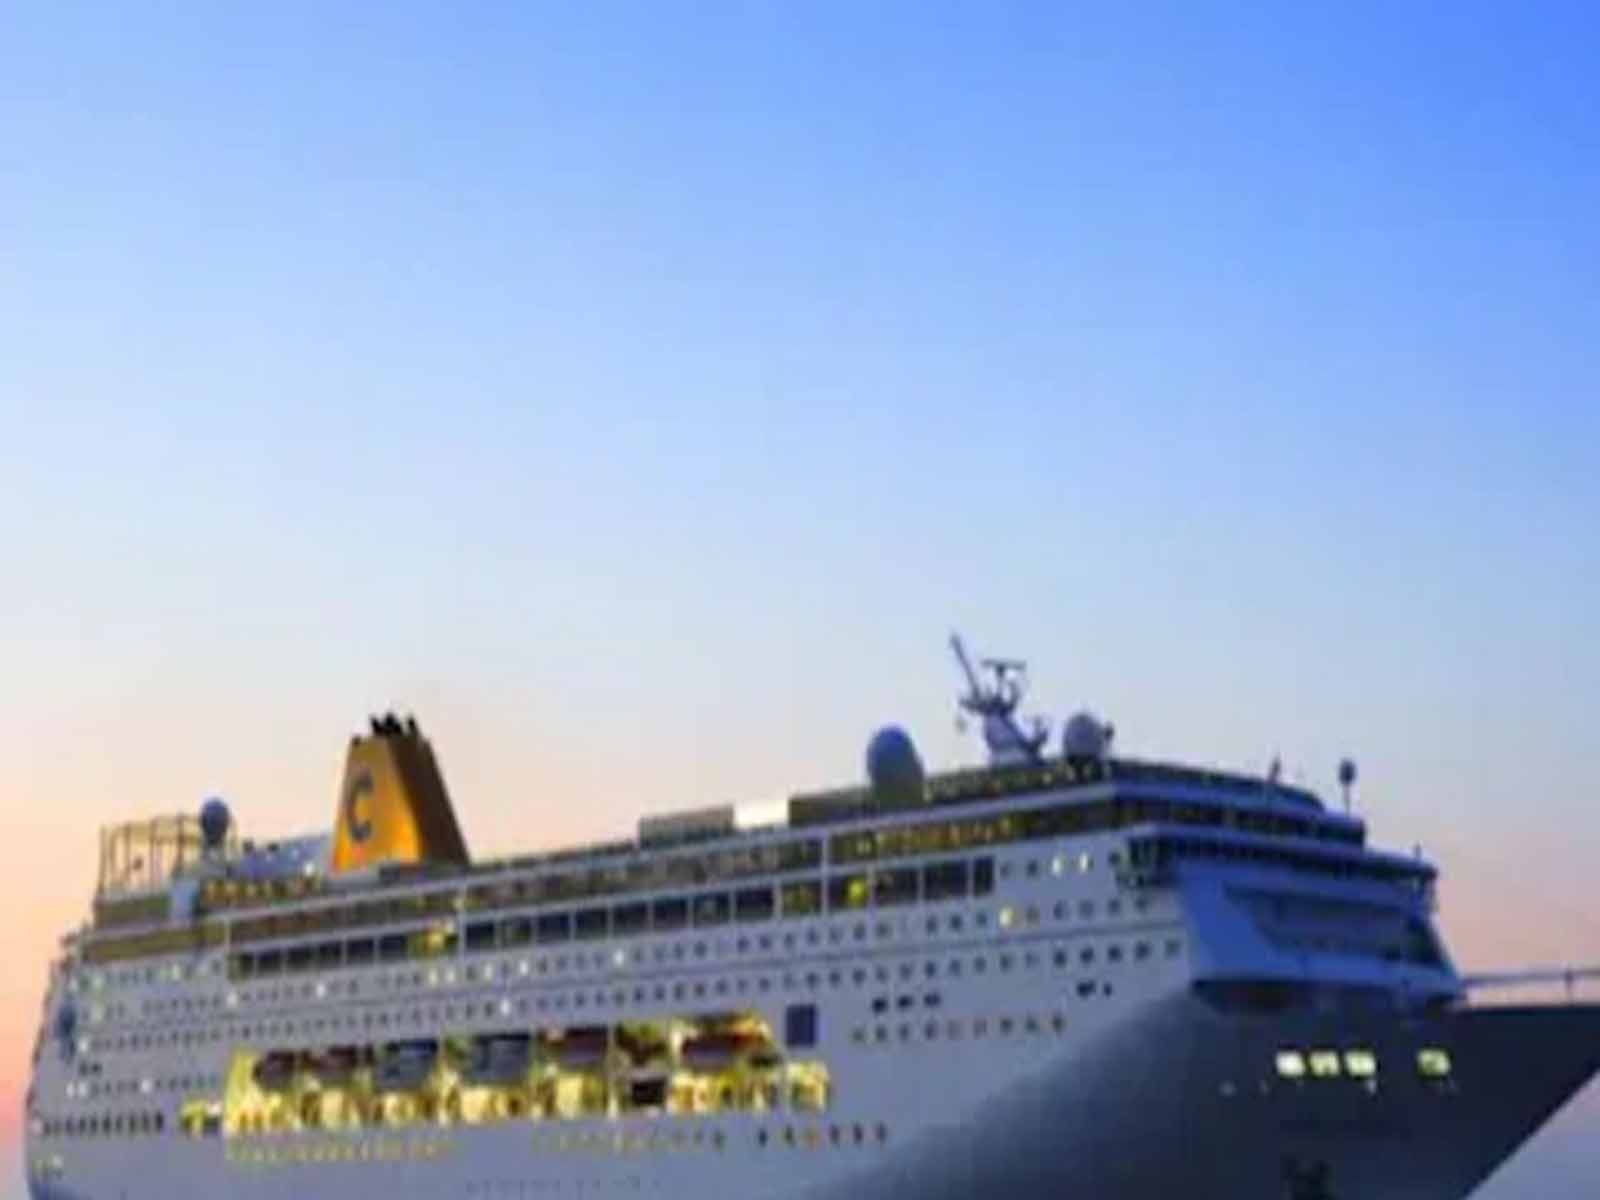 ਸਰਕਾਰ ਨੇ Cruise Tourism ਨੂੰ ਉਤਸ਼ਾਹਿਤ ਕਰਨ ਲਈ ਬਣਾਈ ਕਮੇਟੀ, ਜਾਣੋ ਕੀ ਹੋਵੇਗਾ ਫਾਇਦਾ 